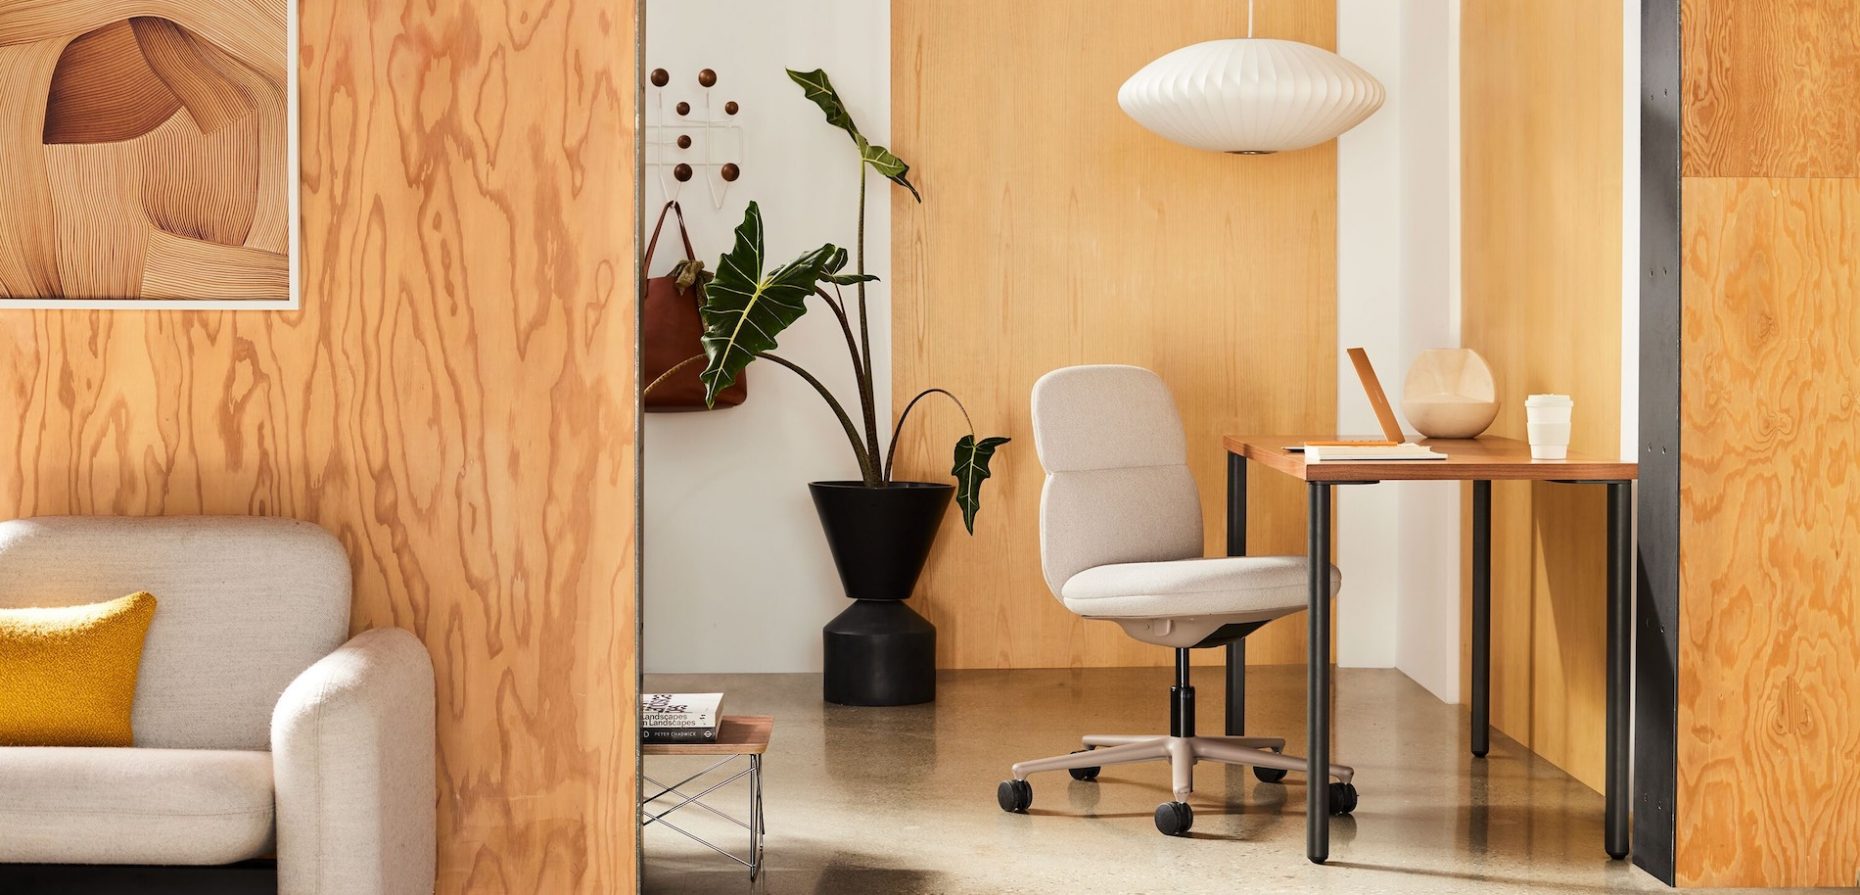 Mit seinem für Herman Miller entworfenen Asari Chair schafft Naoto Fukasawa den schwierigen Spagat zwischen professionellem Büromöbel und Polsterstuhl für das wohnliche Ambiente. Foto: © Herman Miller